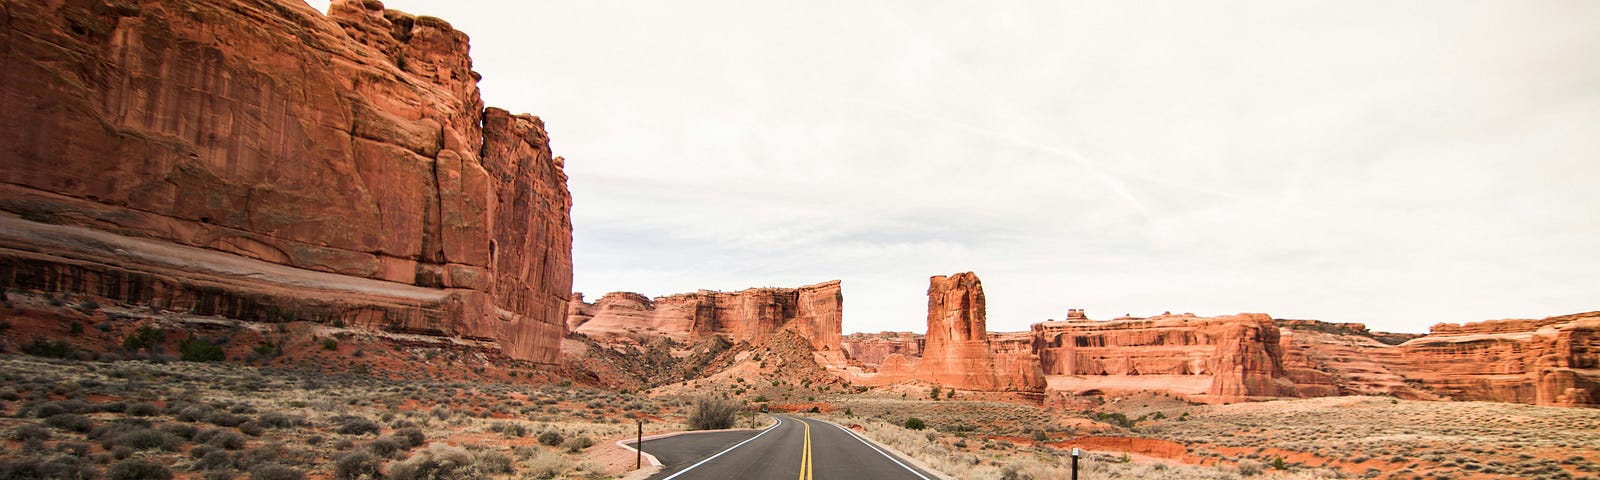 A desert road.